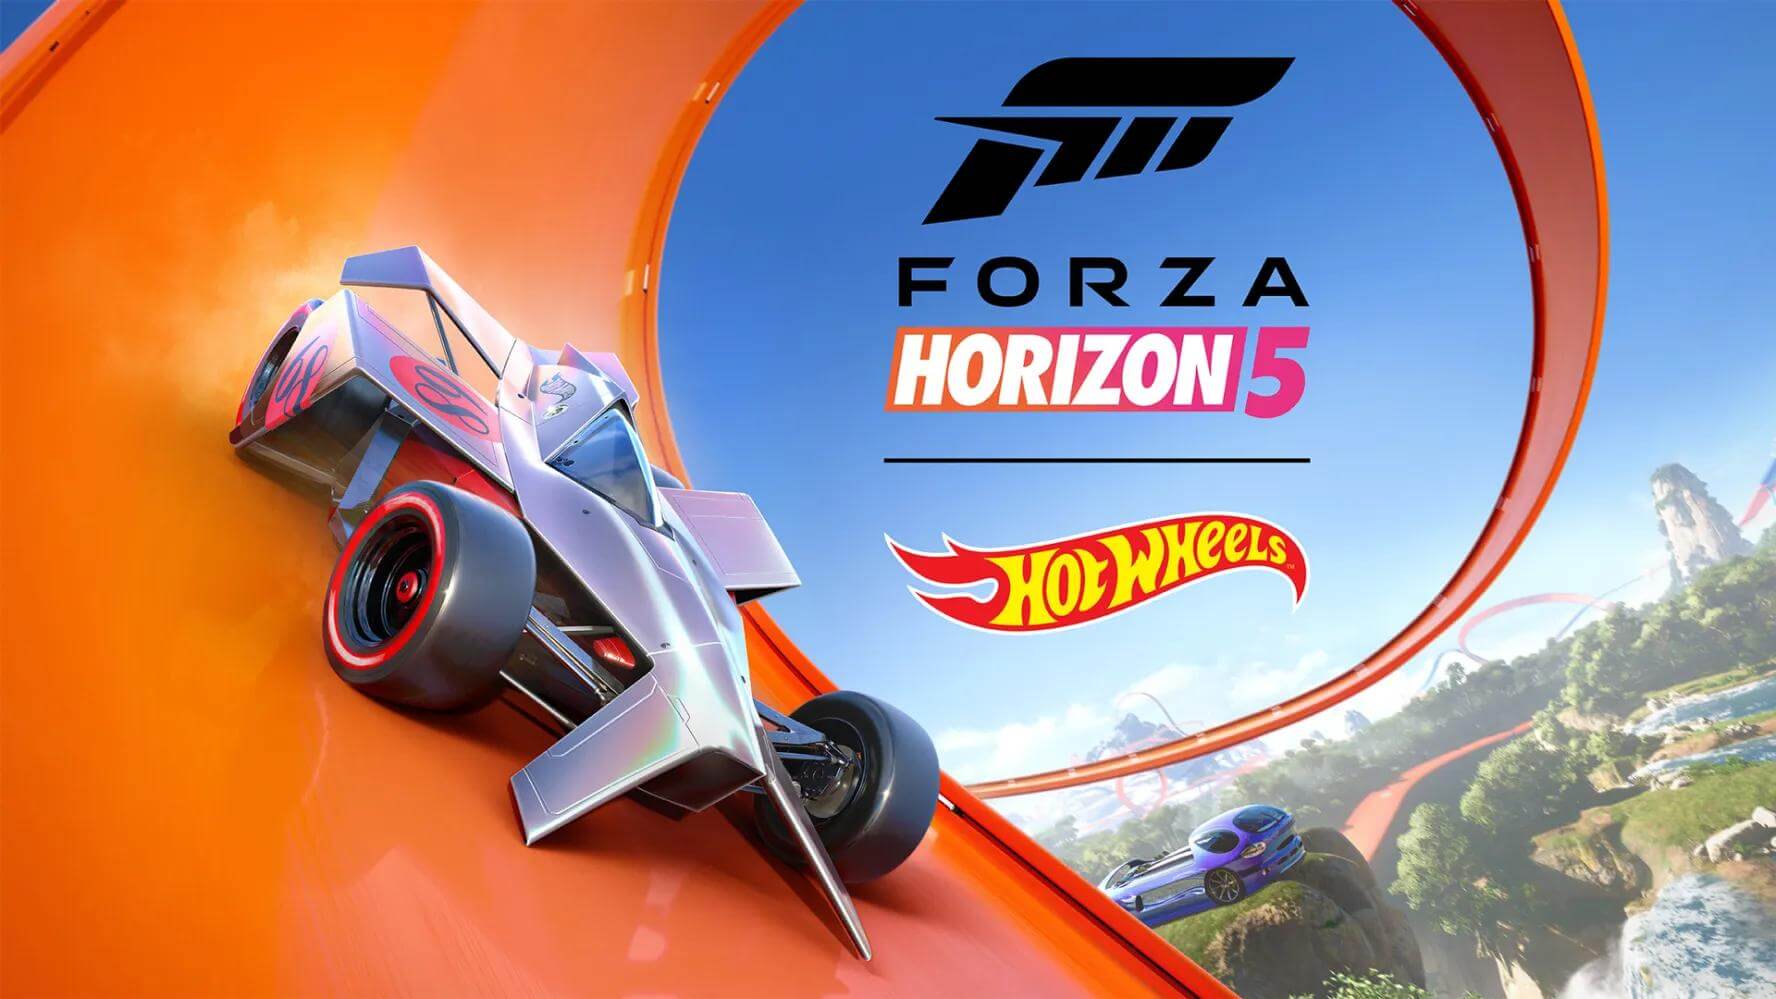 Официально представлен первый DLC для Forza Horizon 5